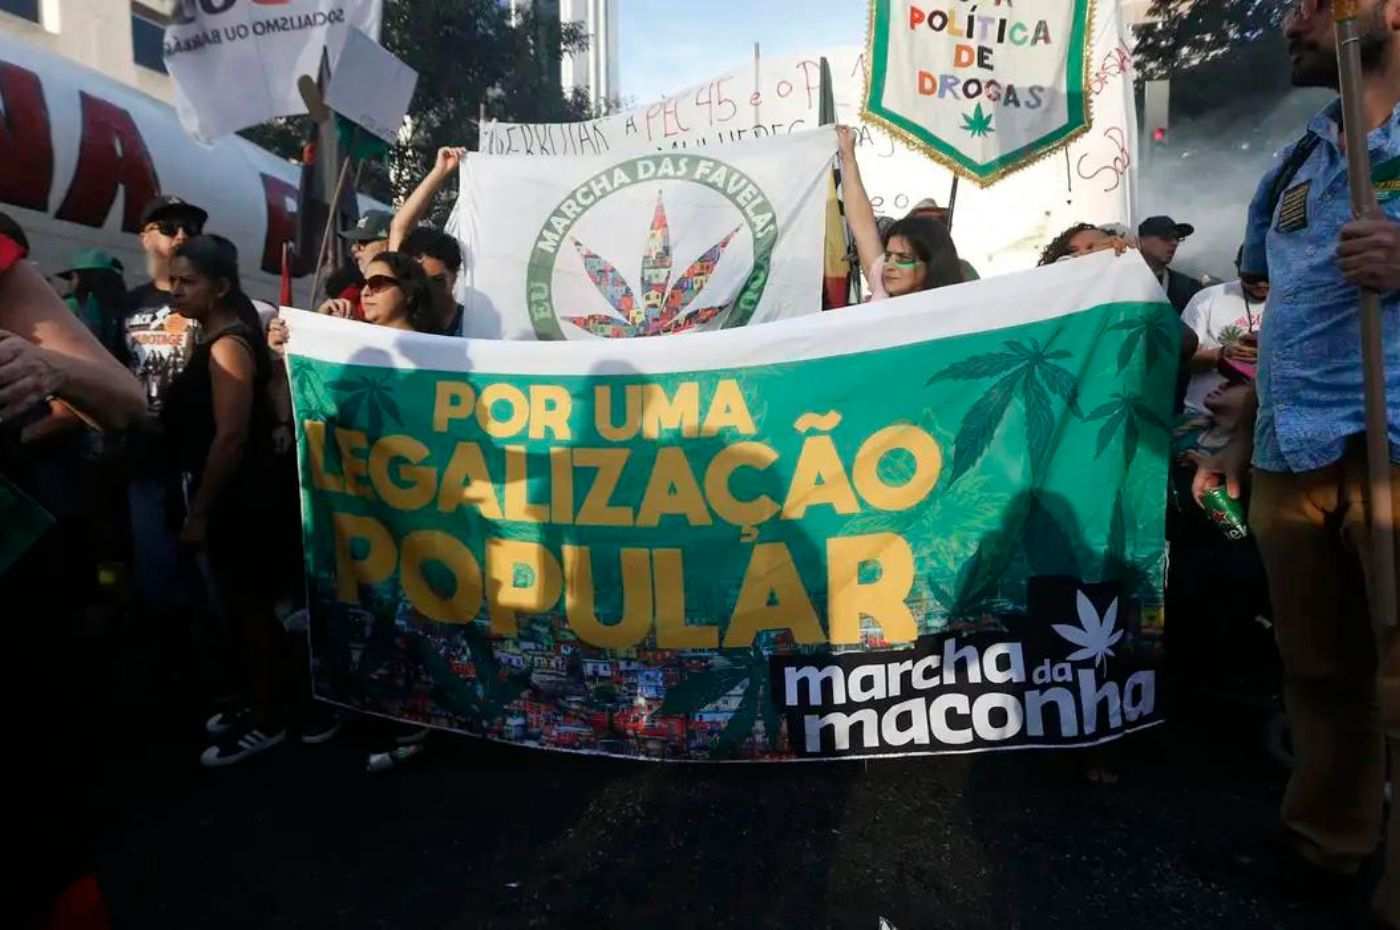 Manifestantes na Marcha da Maconha, segurando cartaz pedindo a legalização desta droga